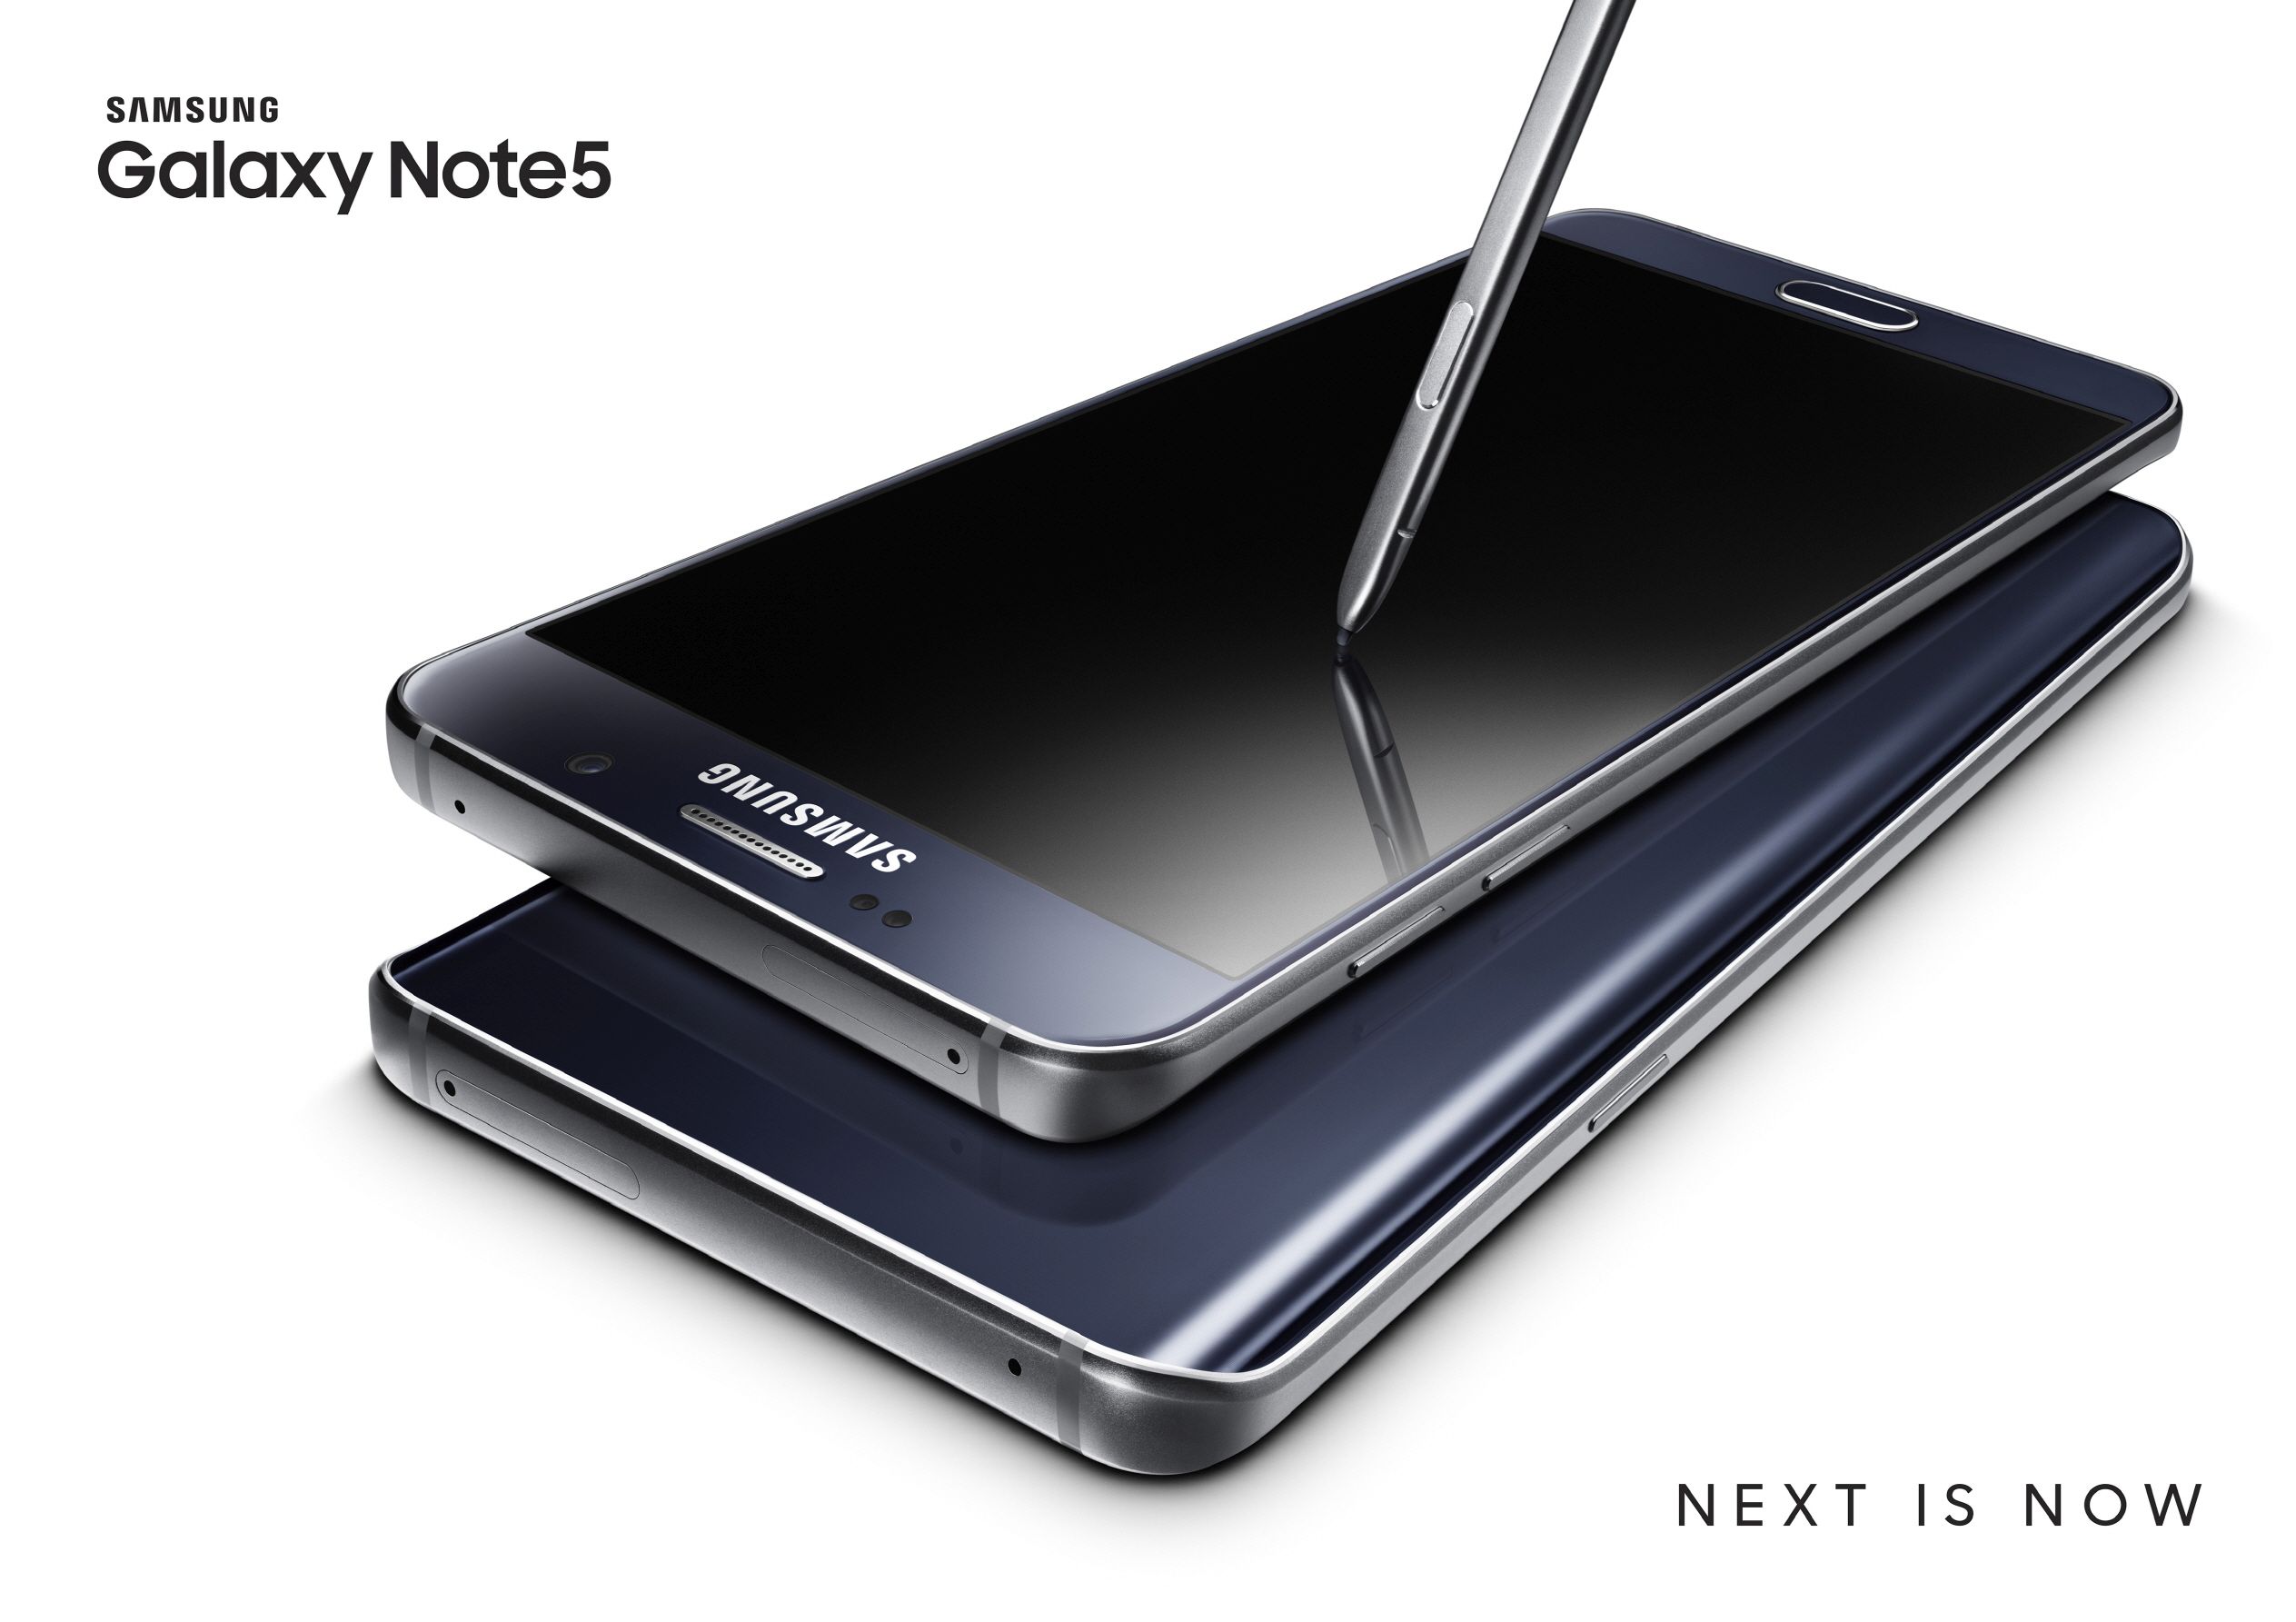 Samsung Galaxy Note 5 ขึ้นแท่นสมาร์ทโฟนที่ได้ความนิยมสูงสุด จาก AnTuTu Benchmark ในช่วงครึ่งแรกของปี 2016